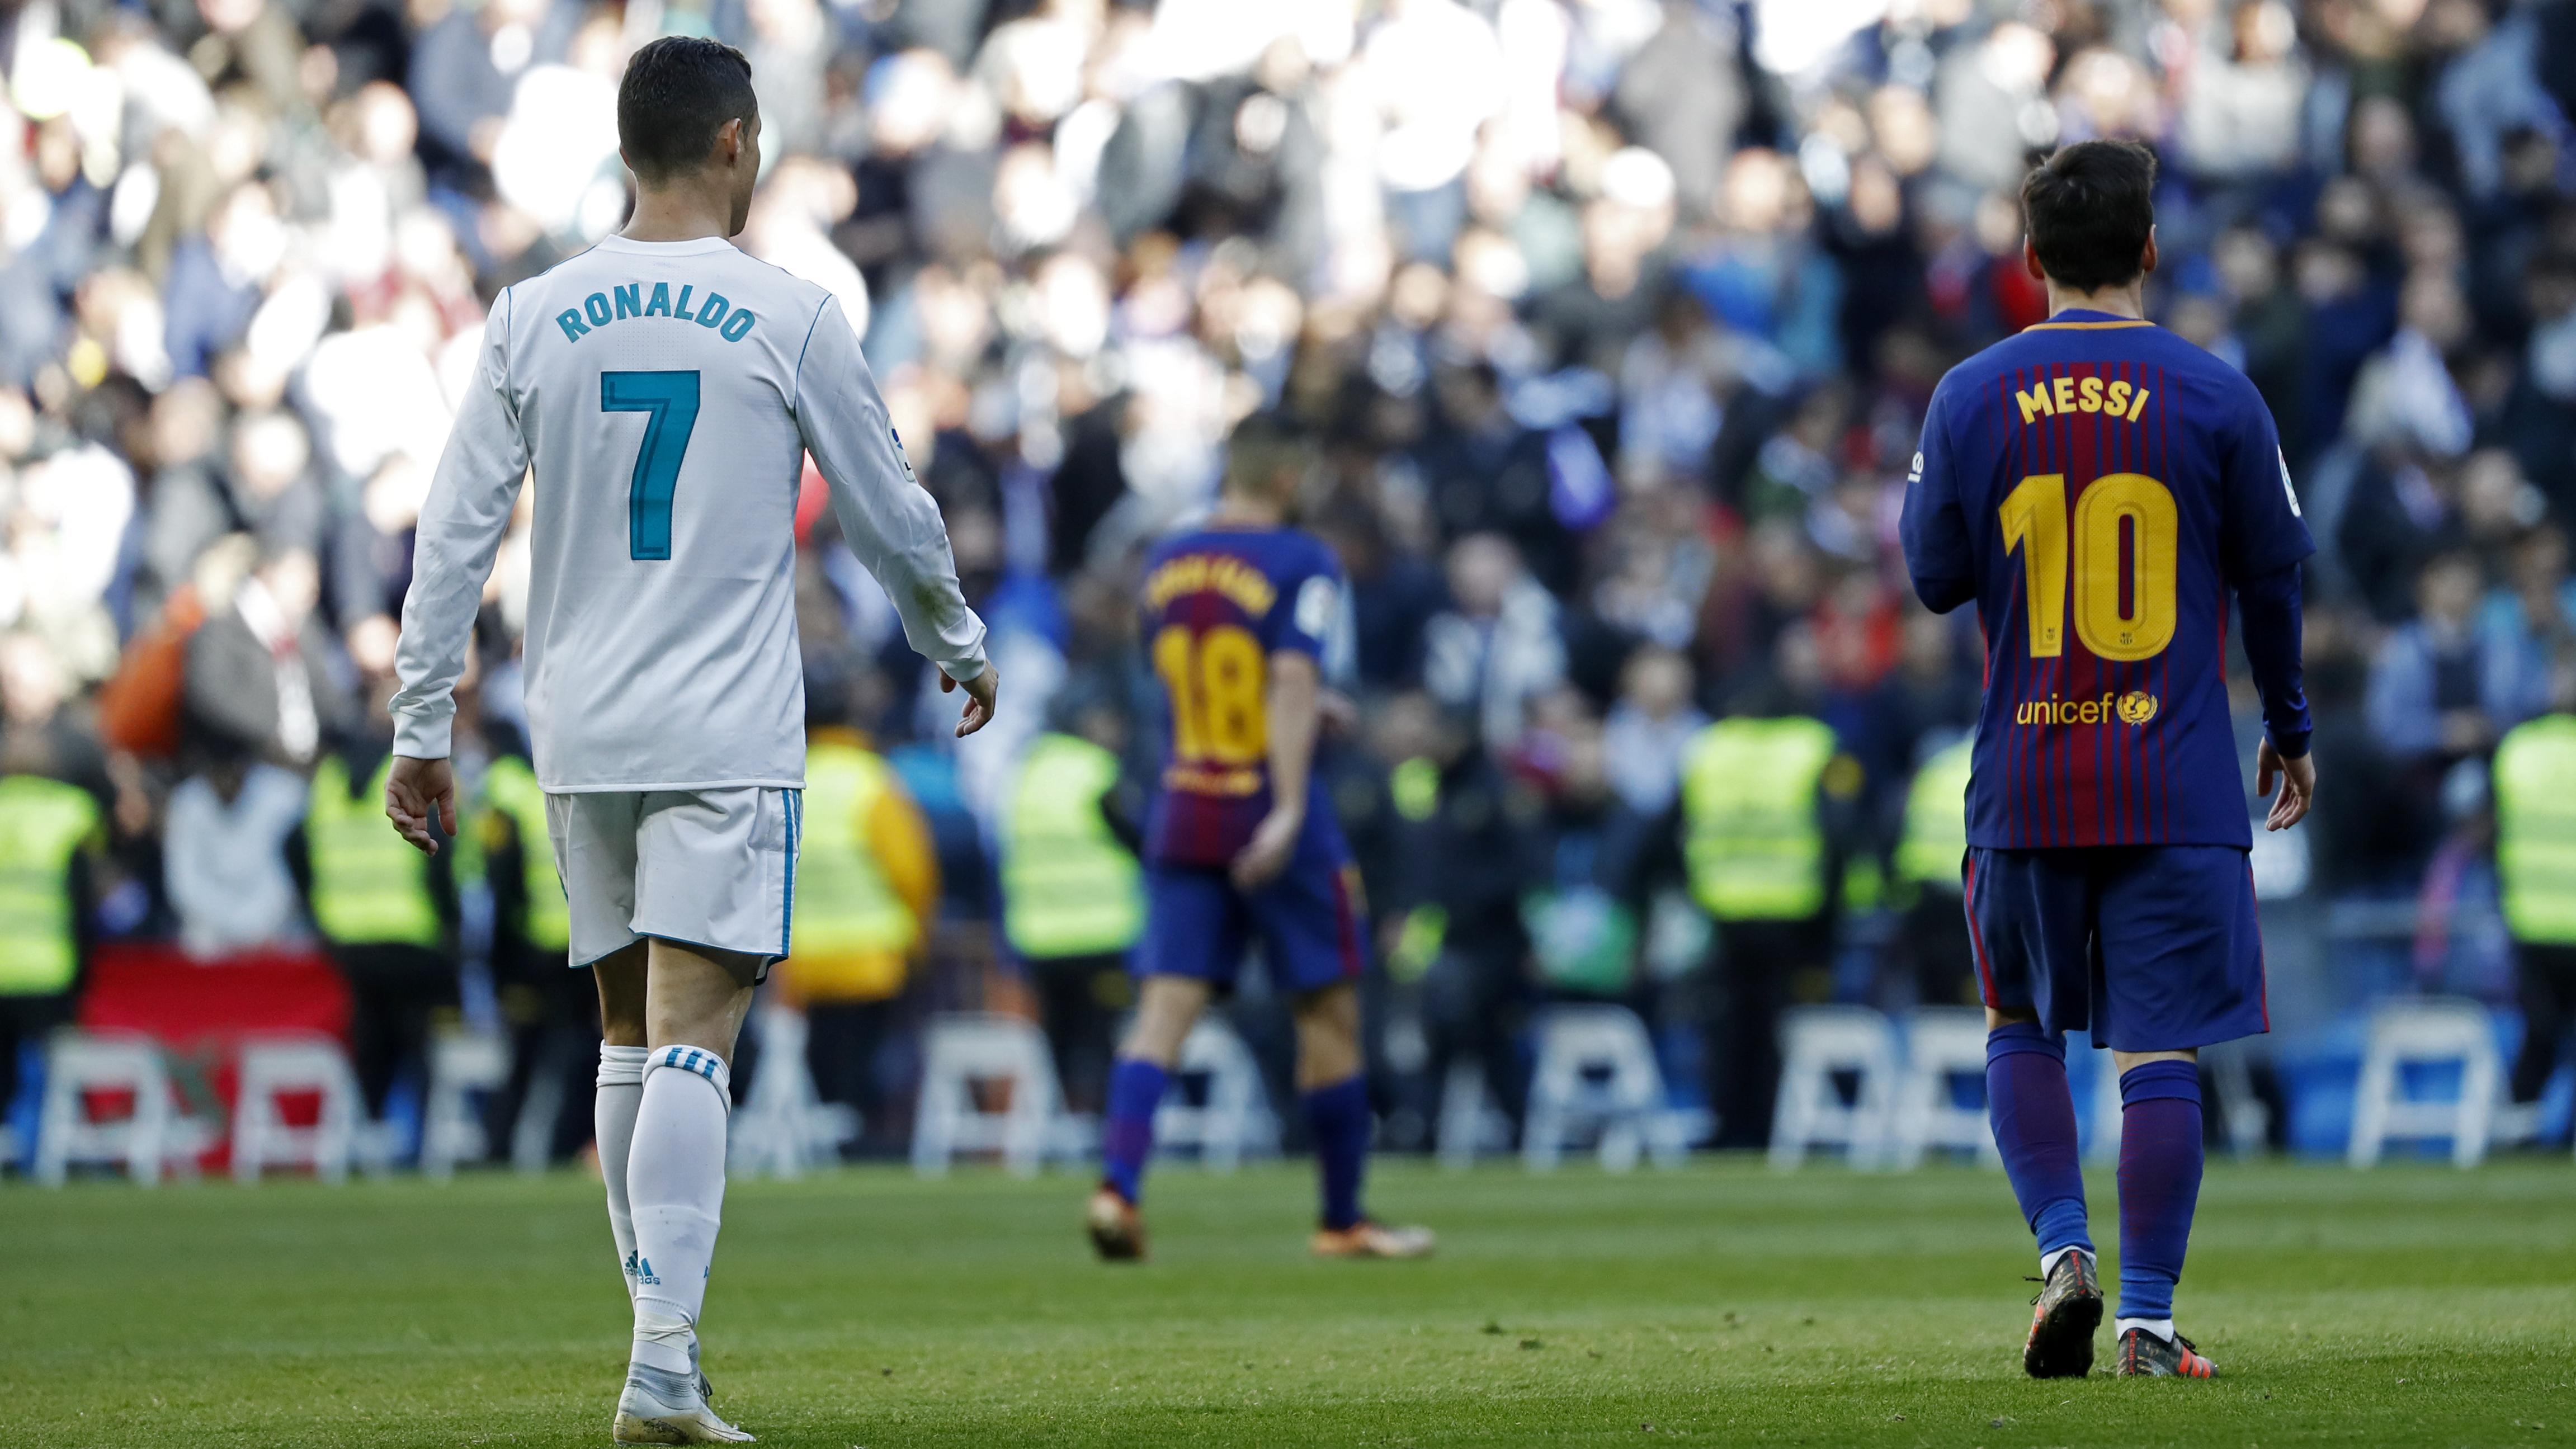 Cuộc so kè giữa Messi và Ronaldo được thúc đẩy bởi fan và truyền thông